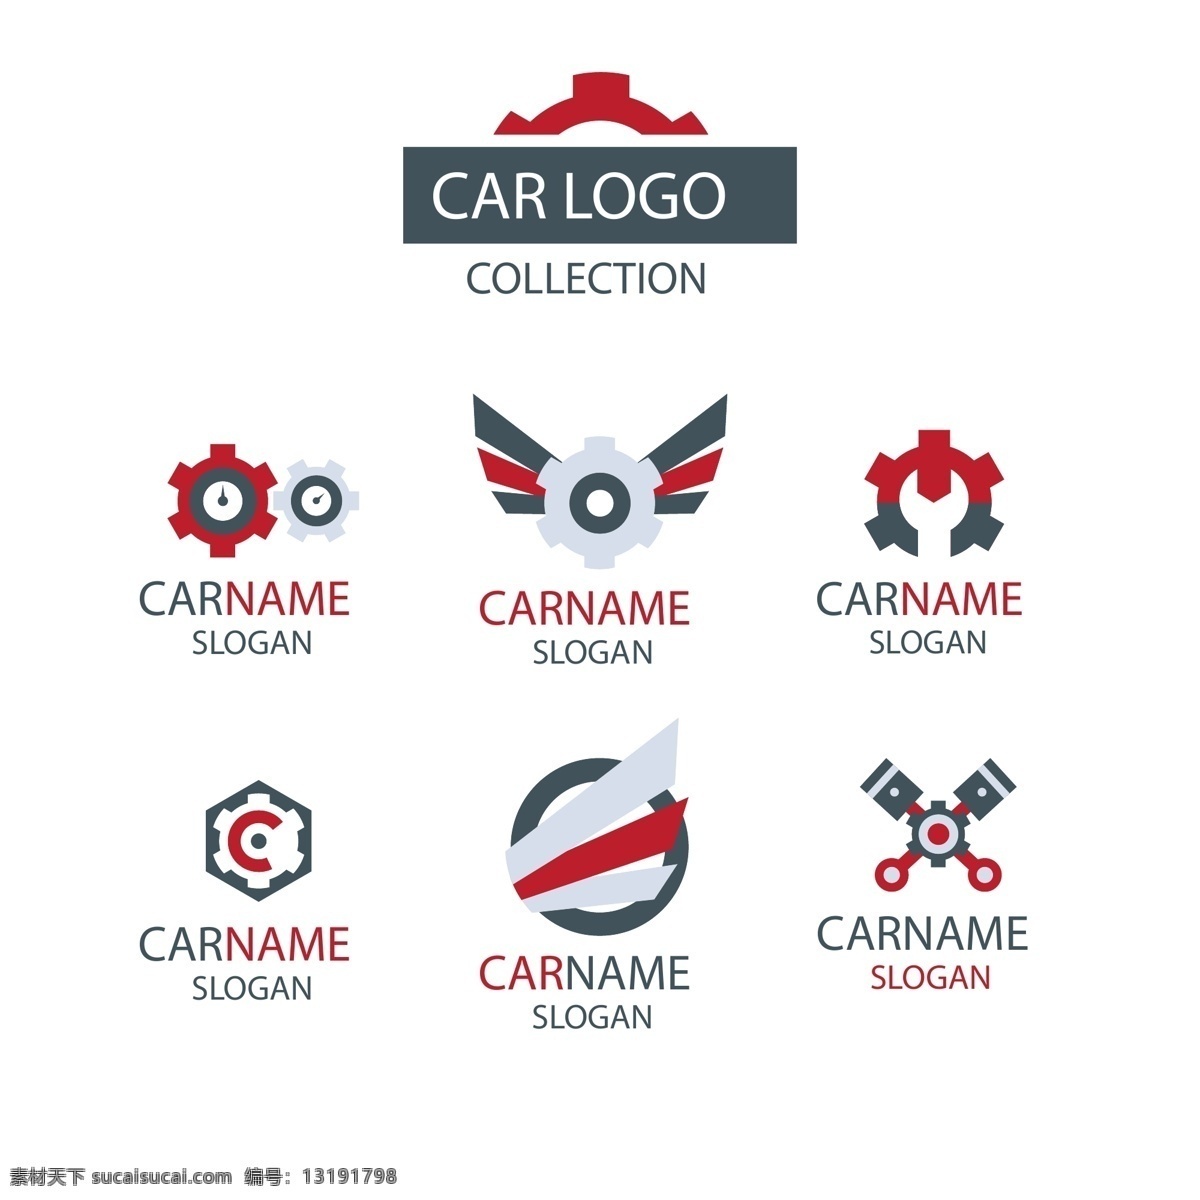 创意 英文 三 色 汽车 logo 汽车logo logo设计 矢量素材 仪表盘 工具 ai素材